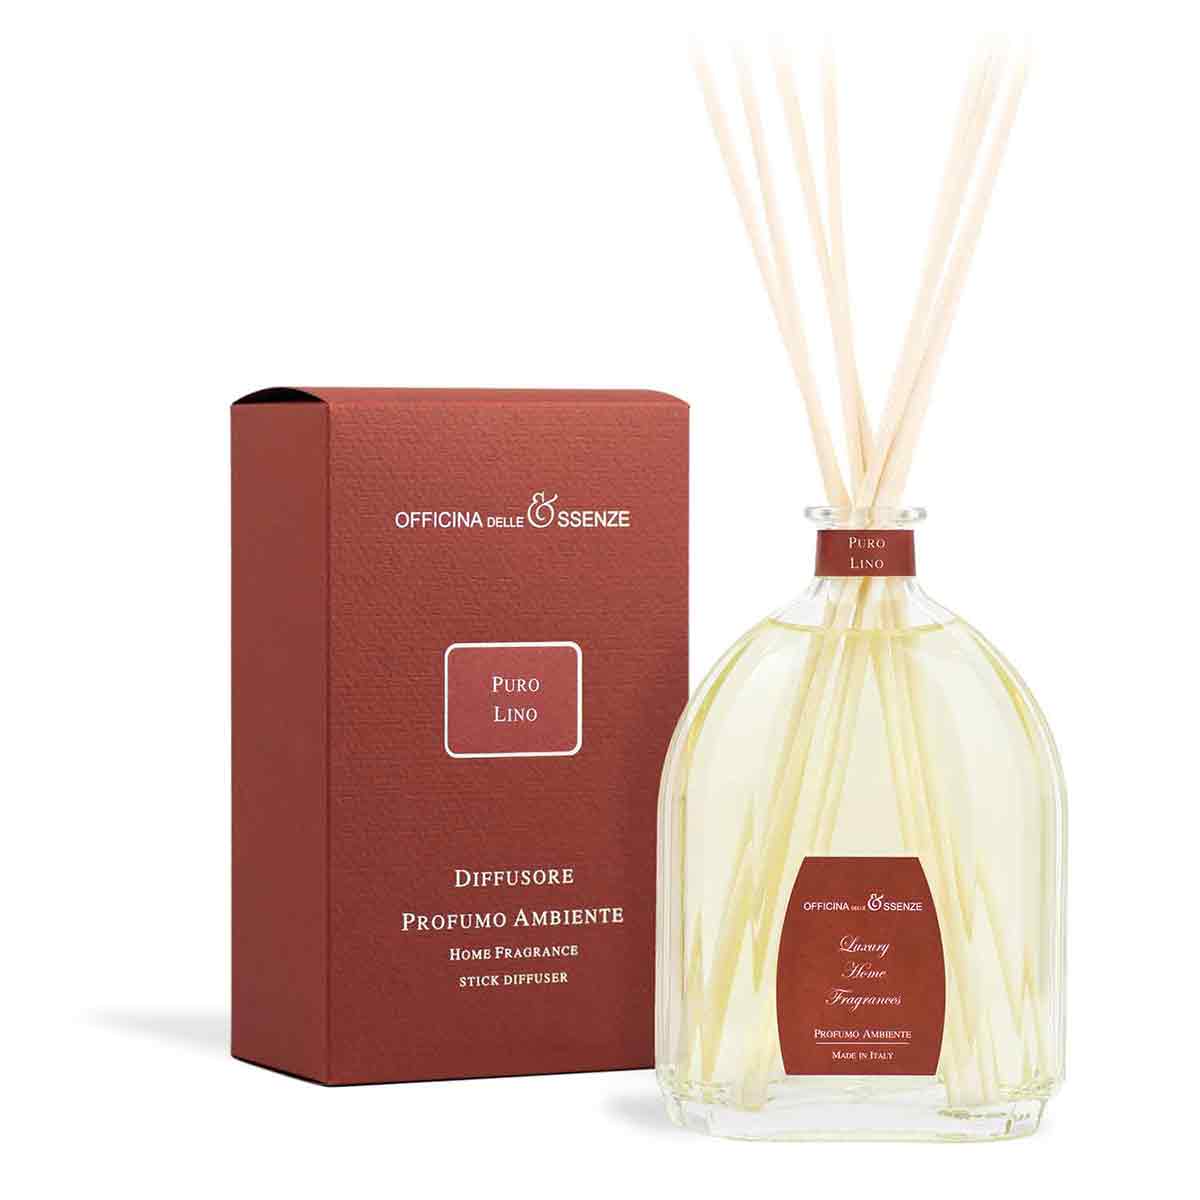 Купить Officina delle Essenze Puro Lino Profumo пробник 1.5 мл в  интернет-магазине парфюмерии Intense по лучшей цене